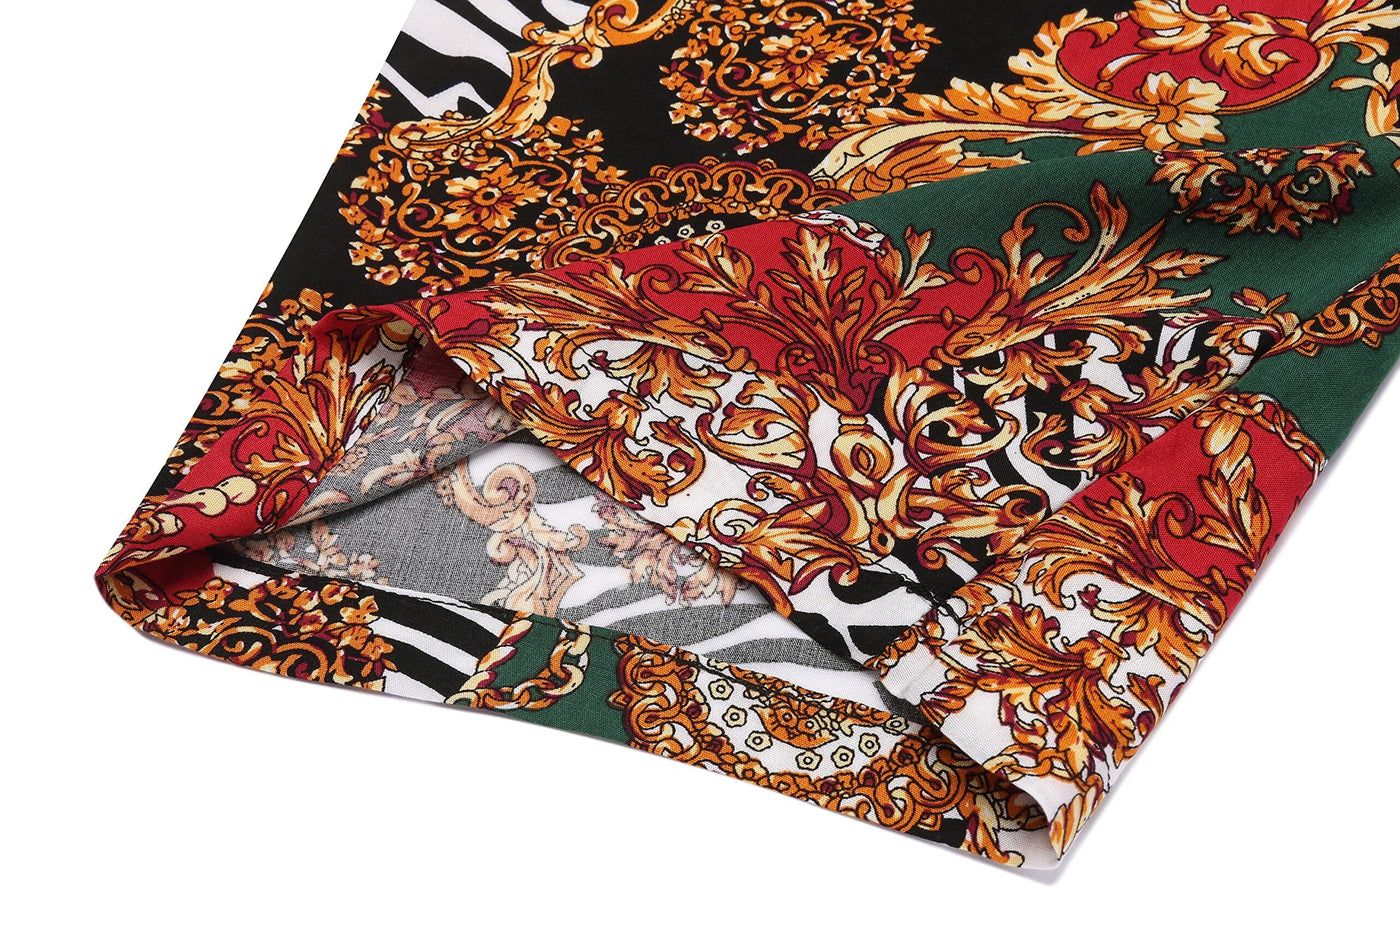 Coofandy Lightweight Kimono Robe (US Only) Robe coofandy 